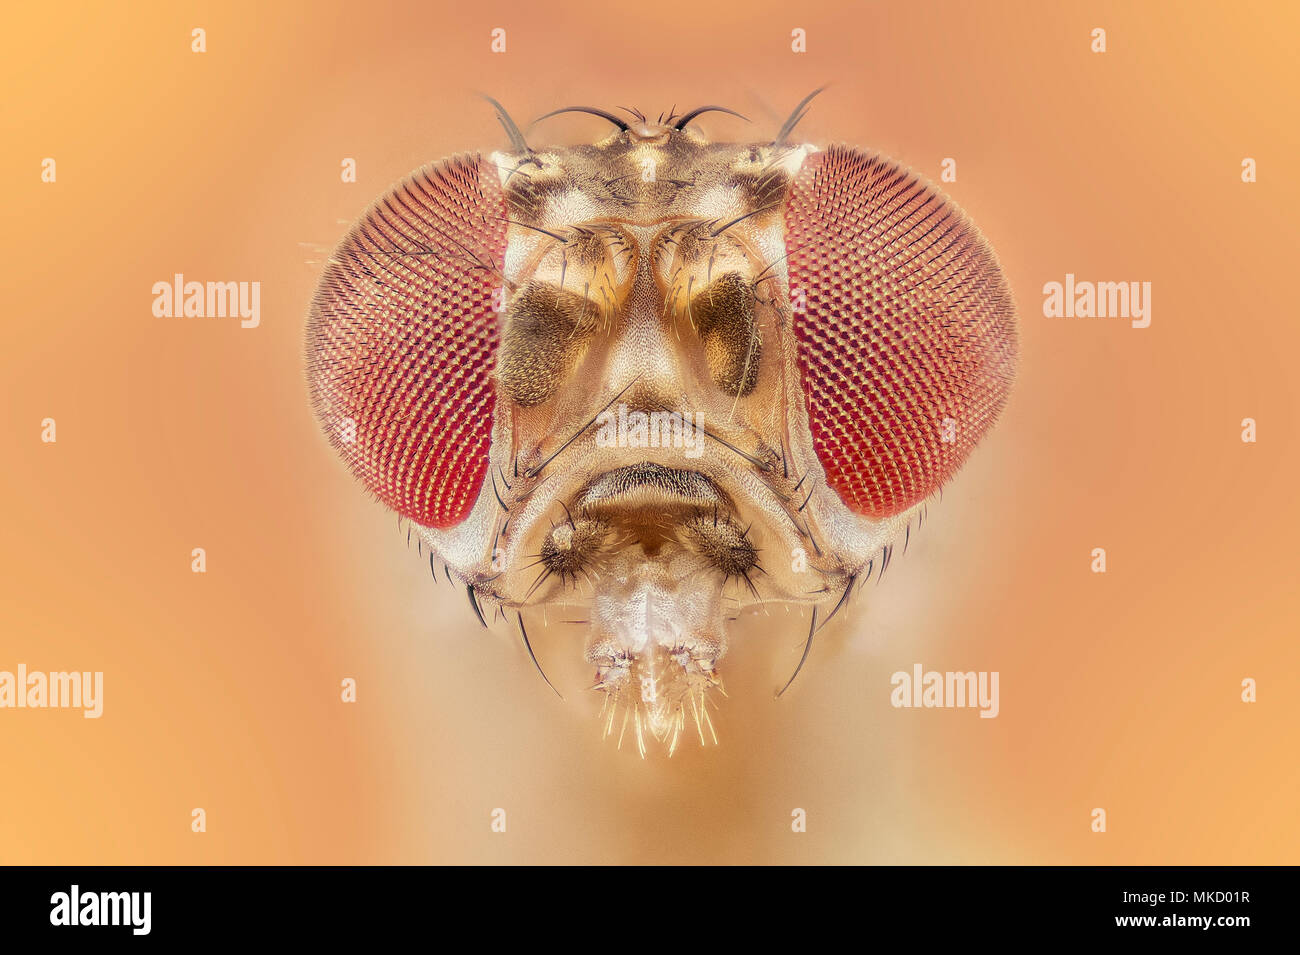 Drosophila melanogaster - fruit fly Stock Photo